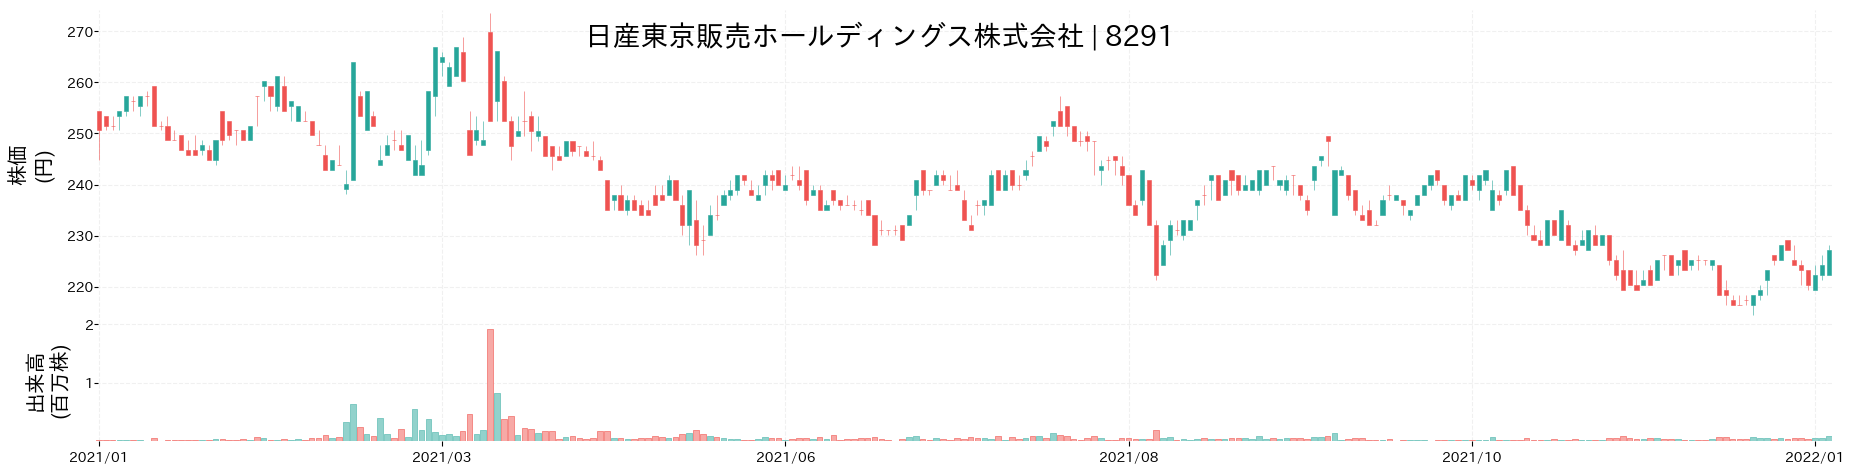 日産東京販売ホールディングスの株価推移(2021)